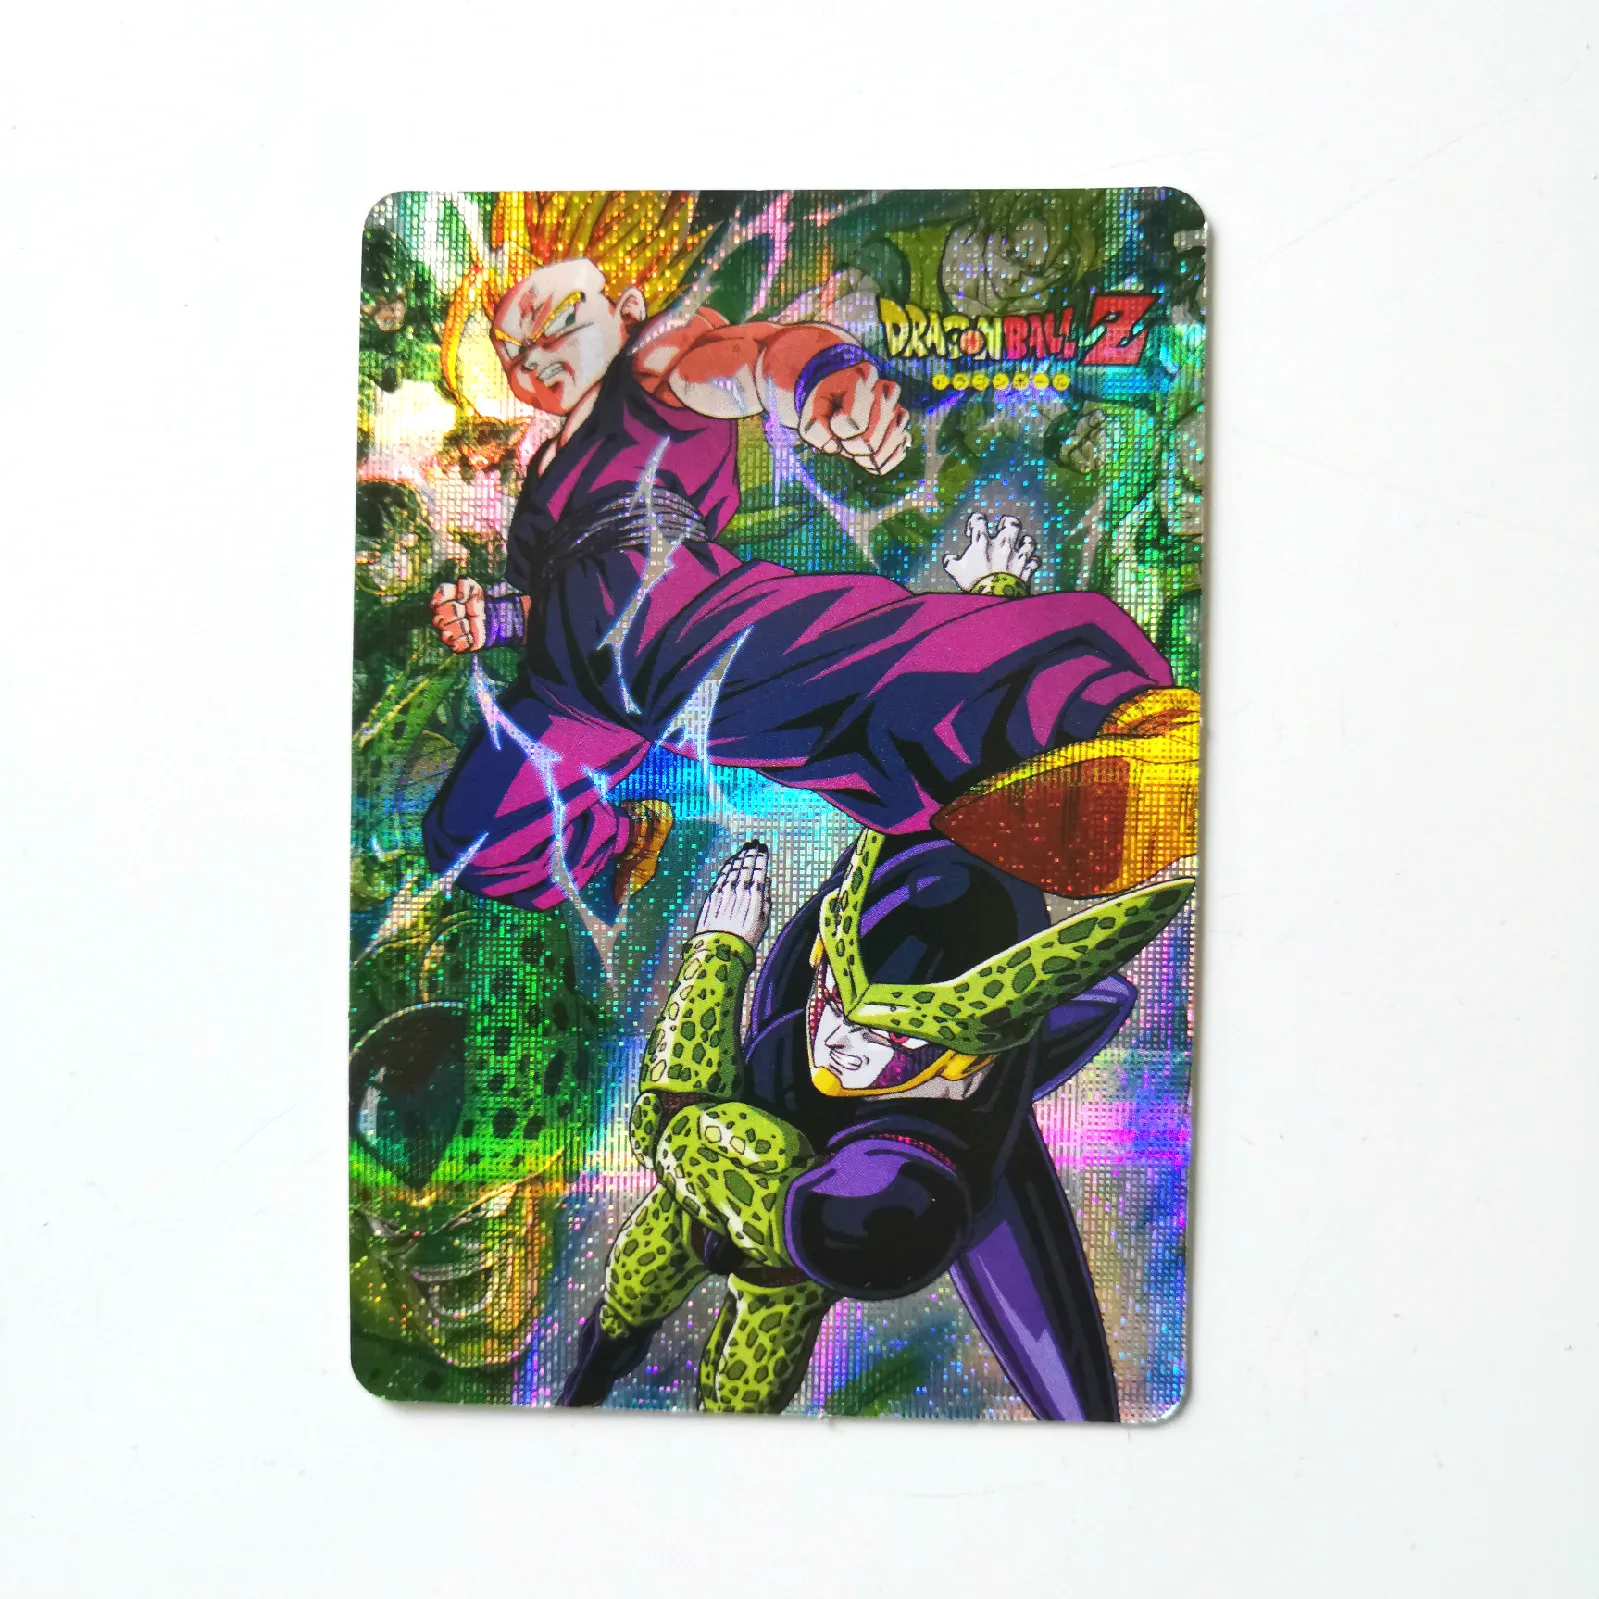 5 шт./компл. супер Dragon Ball-Z Heroes боевой карты Ultra Instinct Goku Vegeta Android 18 сотовый игровая коллекция карт